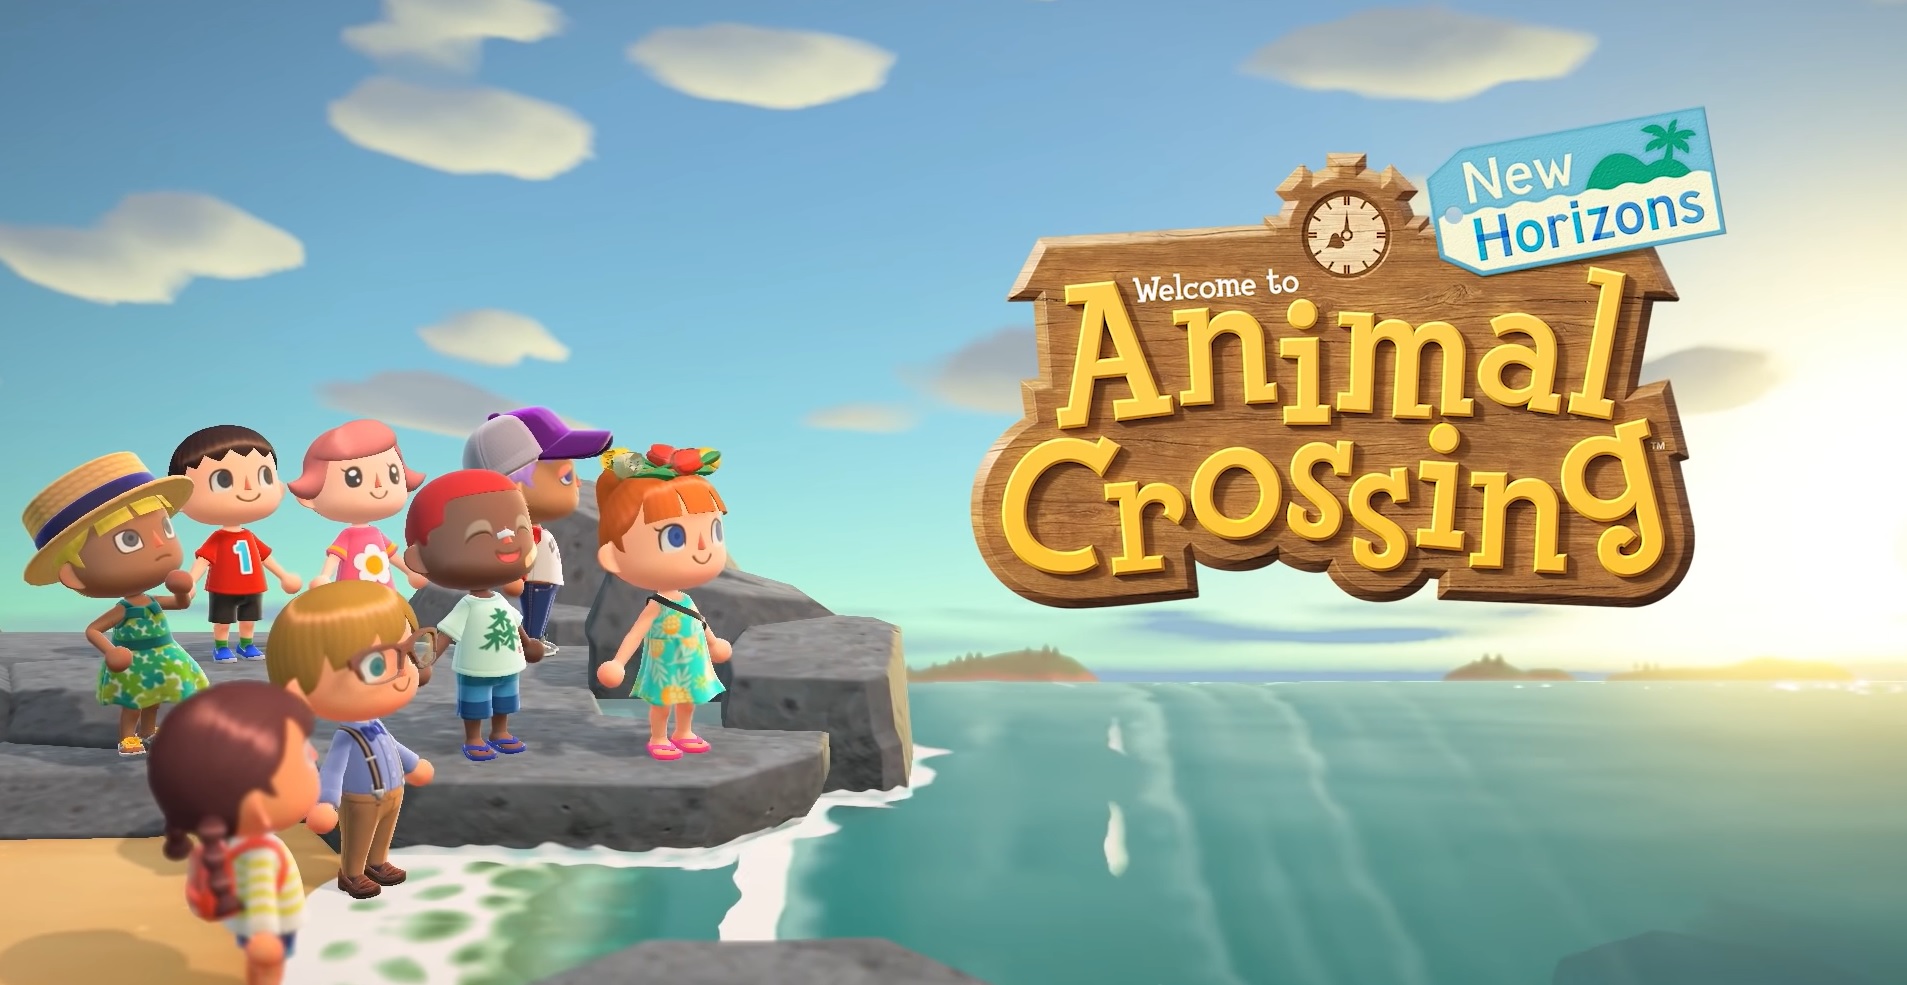 O 'Animal Crossing' foi lançado há pouco mais de um mês e já bateu recordes na Nintendo